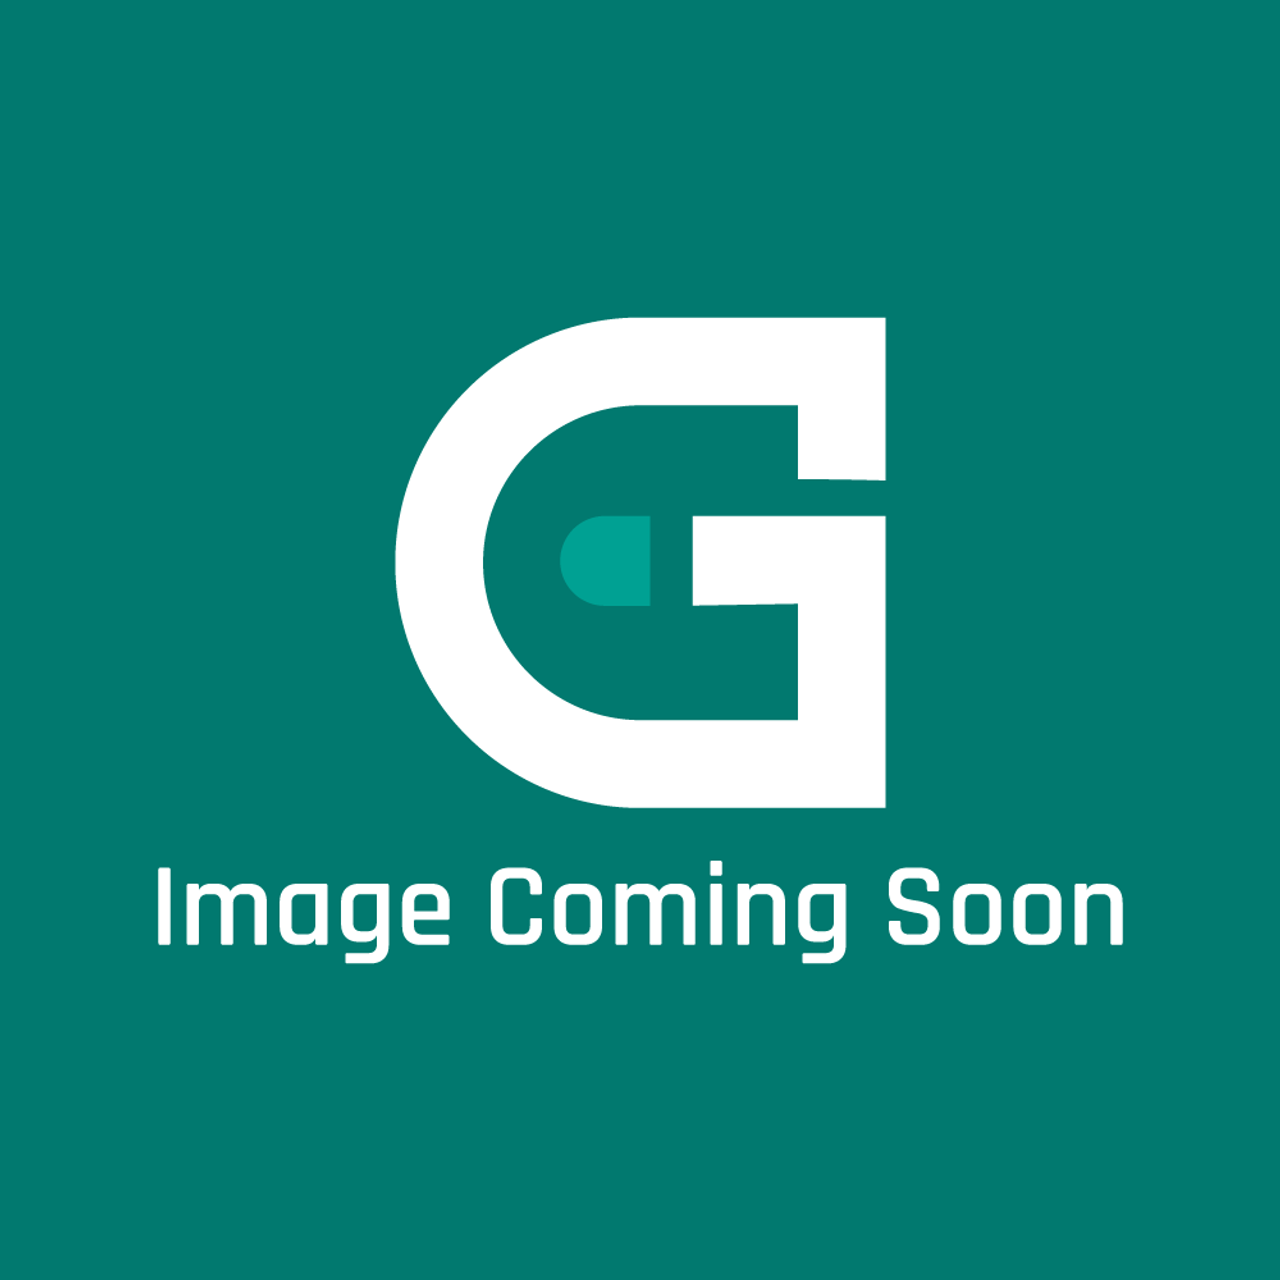 GE Appliances WJ43X28571 - Heat Sink Gasket - Image Coming Soon!